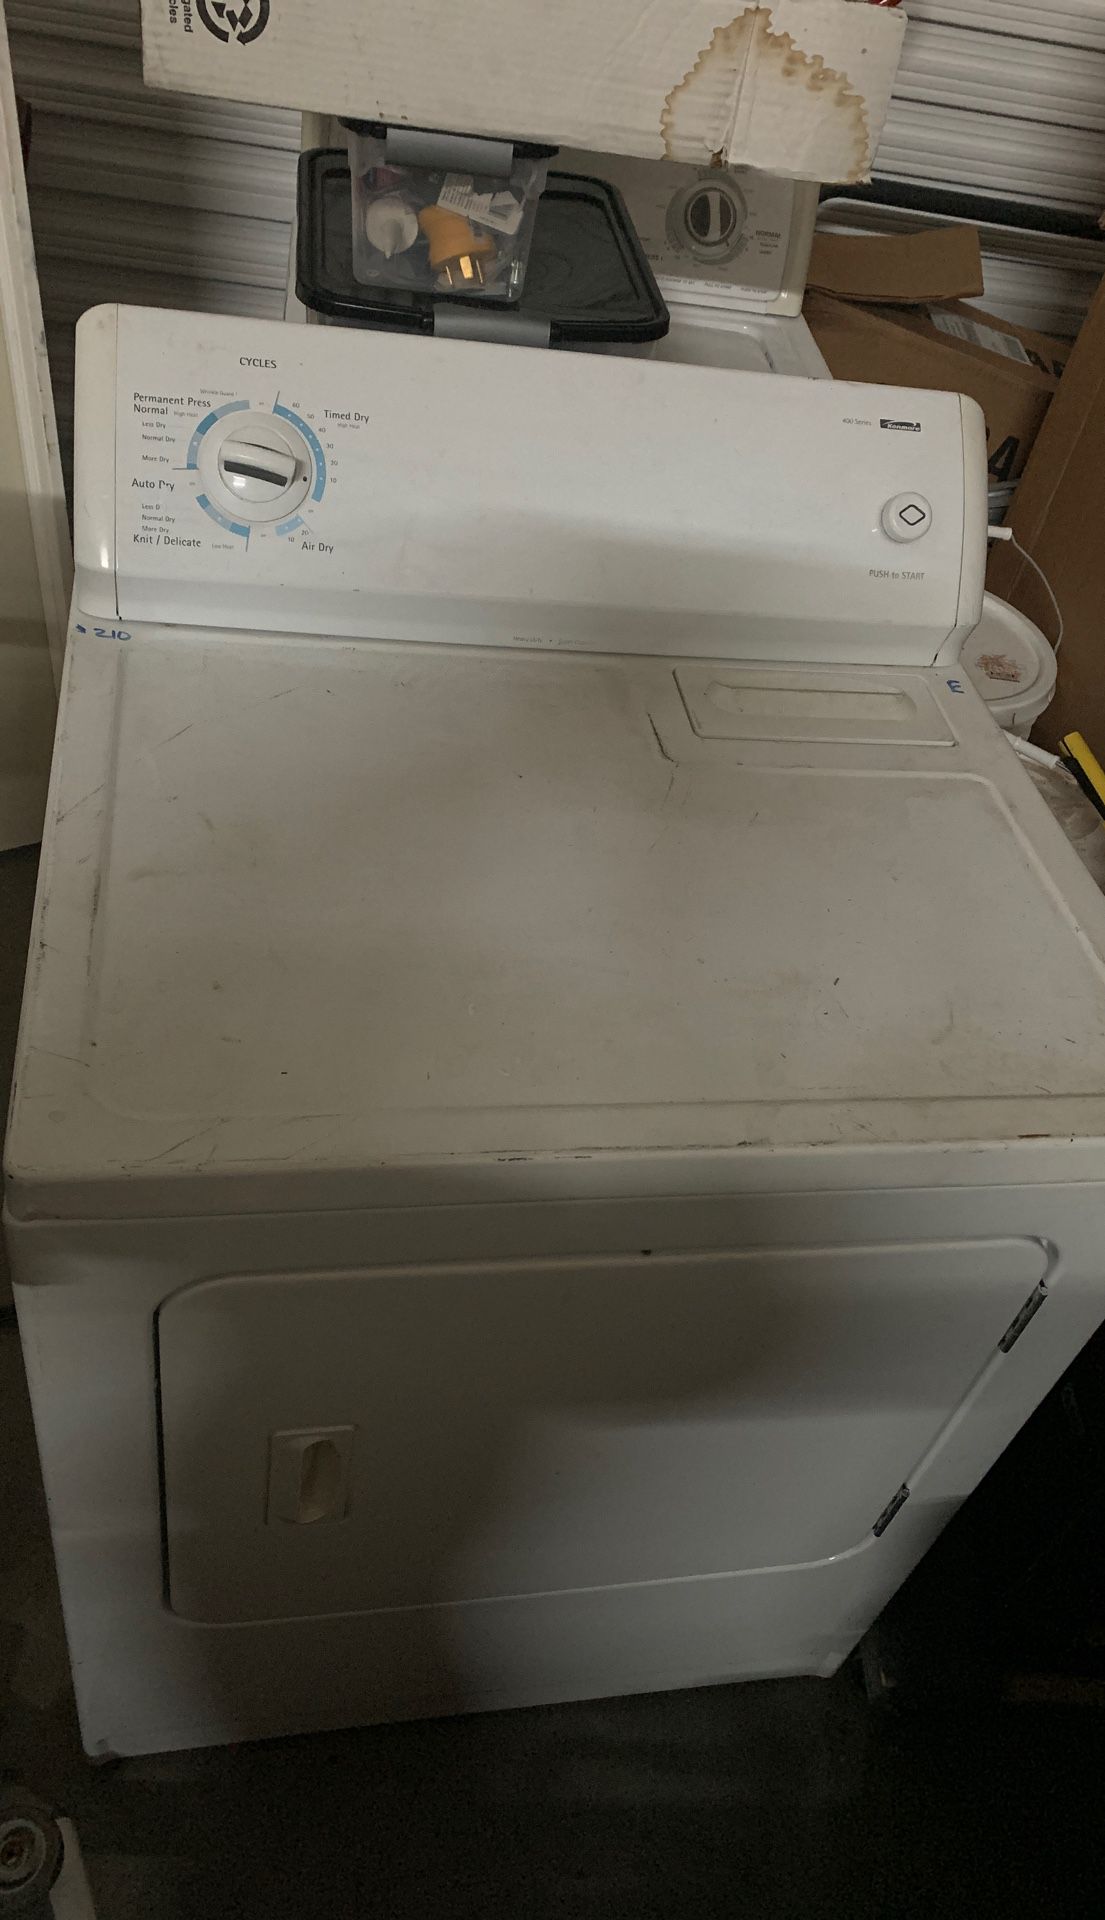 Kenmore 400 series dryer